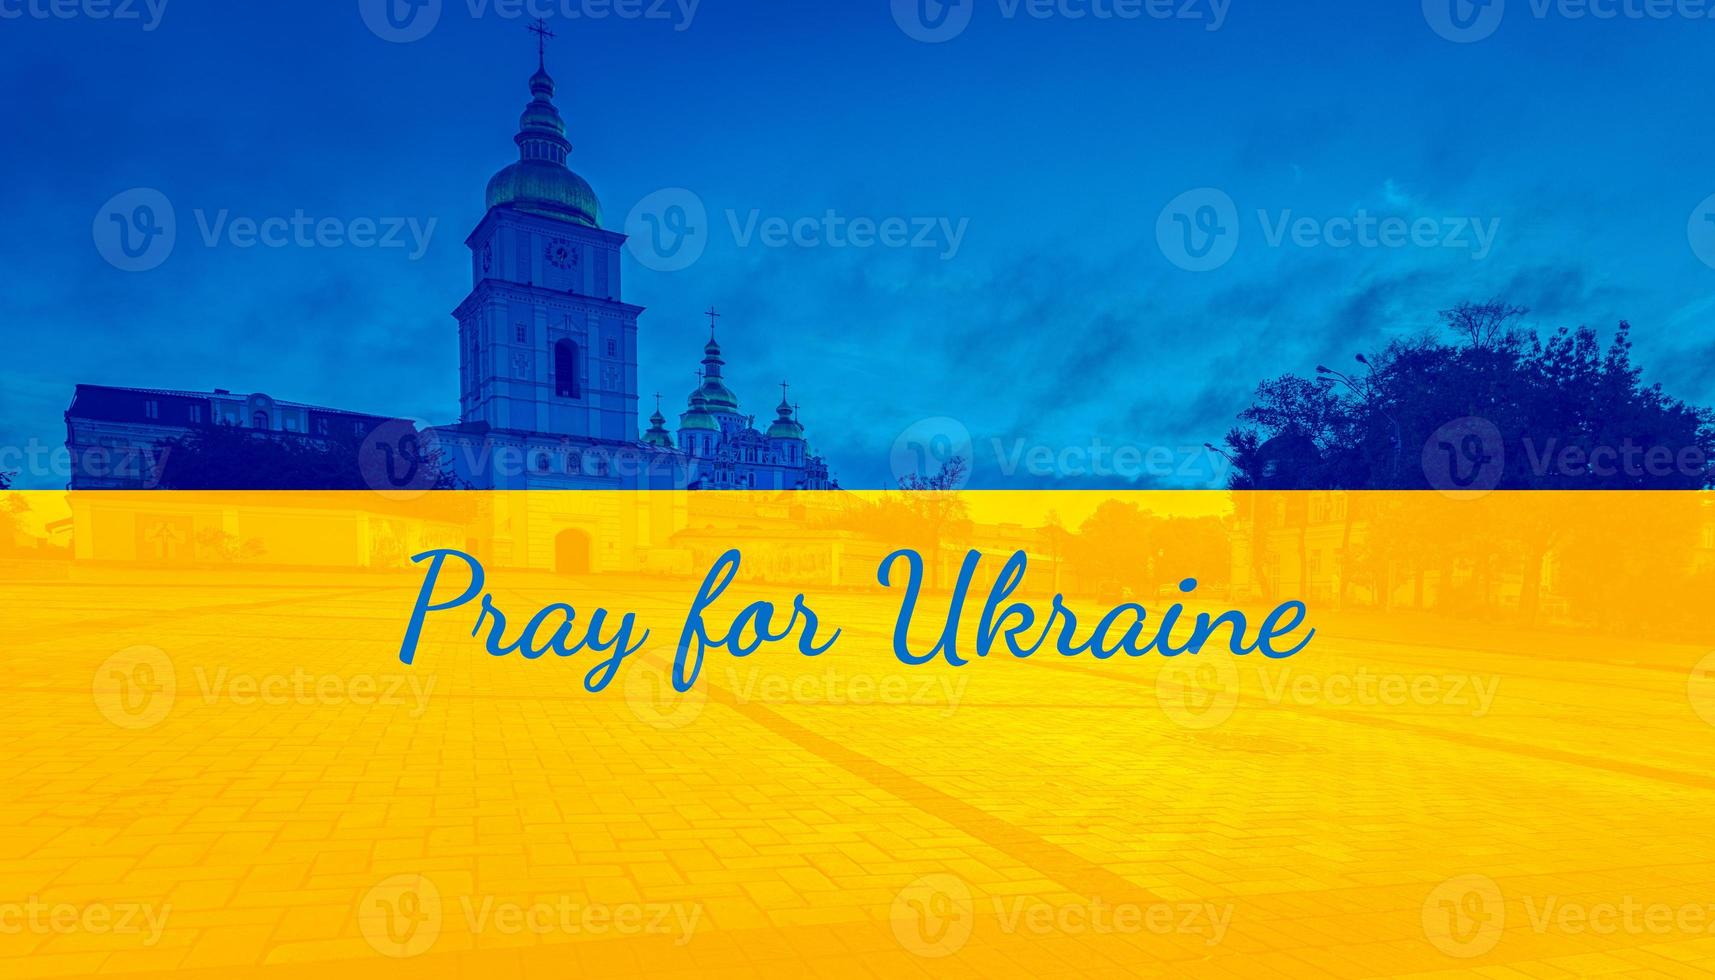 bid voor oekraïne, vlag oekraïne. rusland vs oekraïne stop oorlog, rusland en oekraïne vechten foto